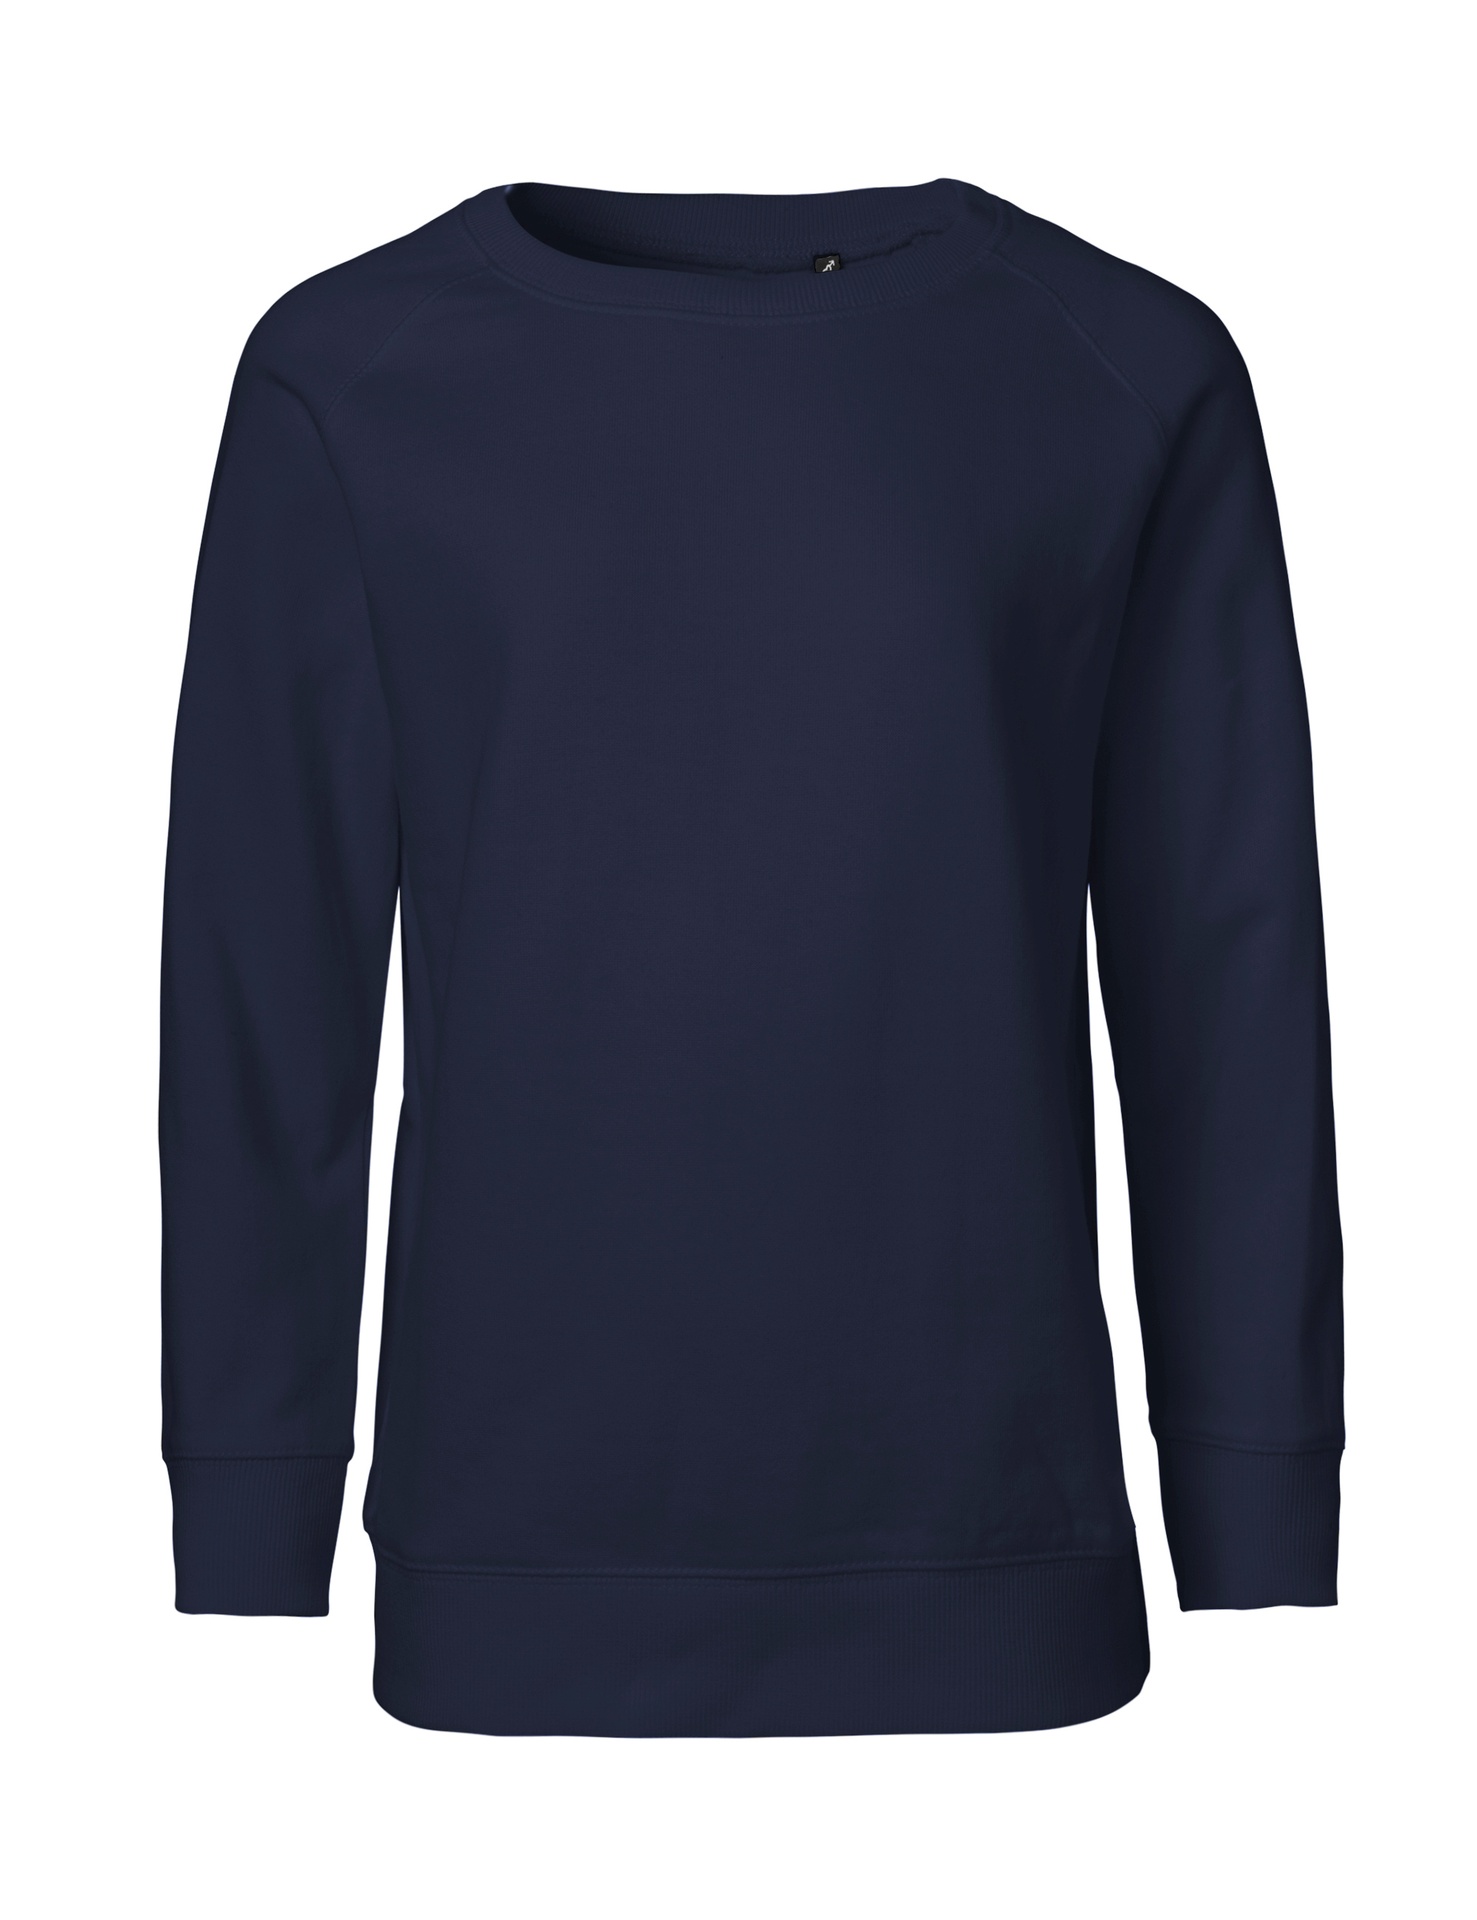 [PR/05531] Kids Sweatshirt (Navy 04, 128/134 cm)